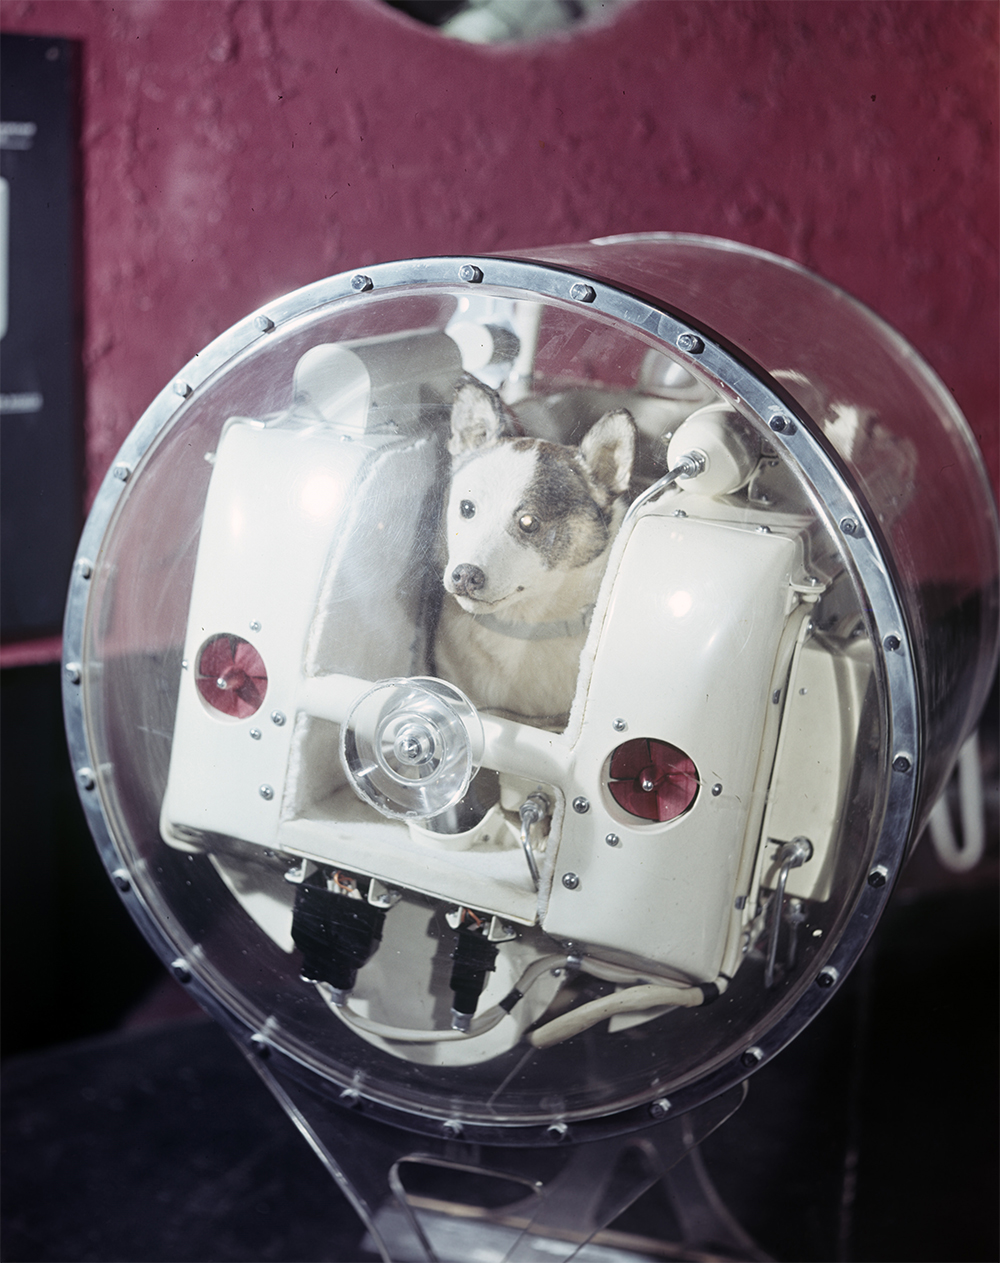 Макет контейнера с собакой Лайкой, запущенного со вторым советским искусственным спутником Земли 3 ноября 1957 года.